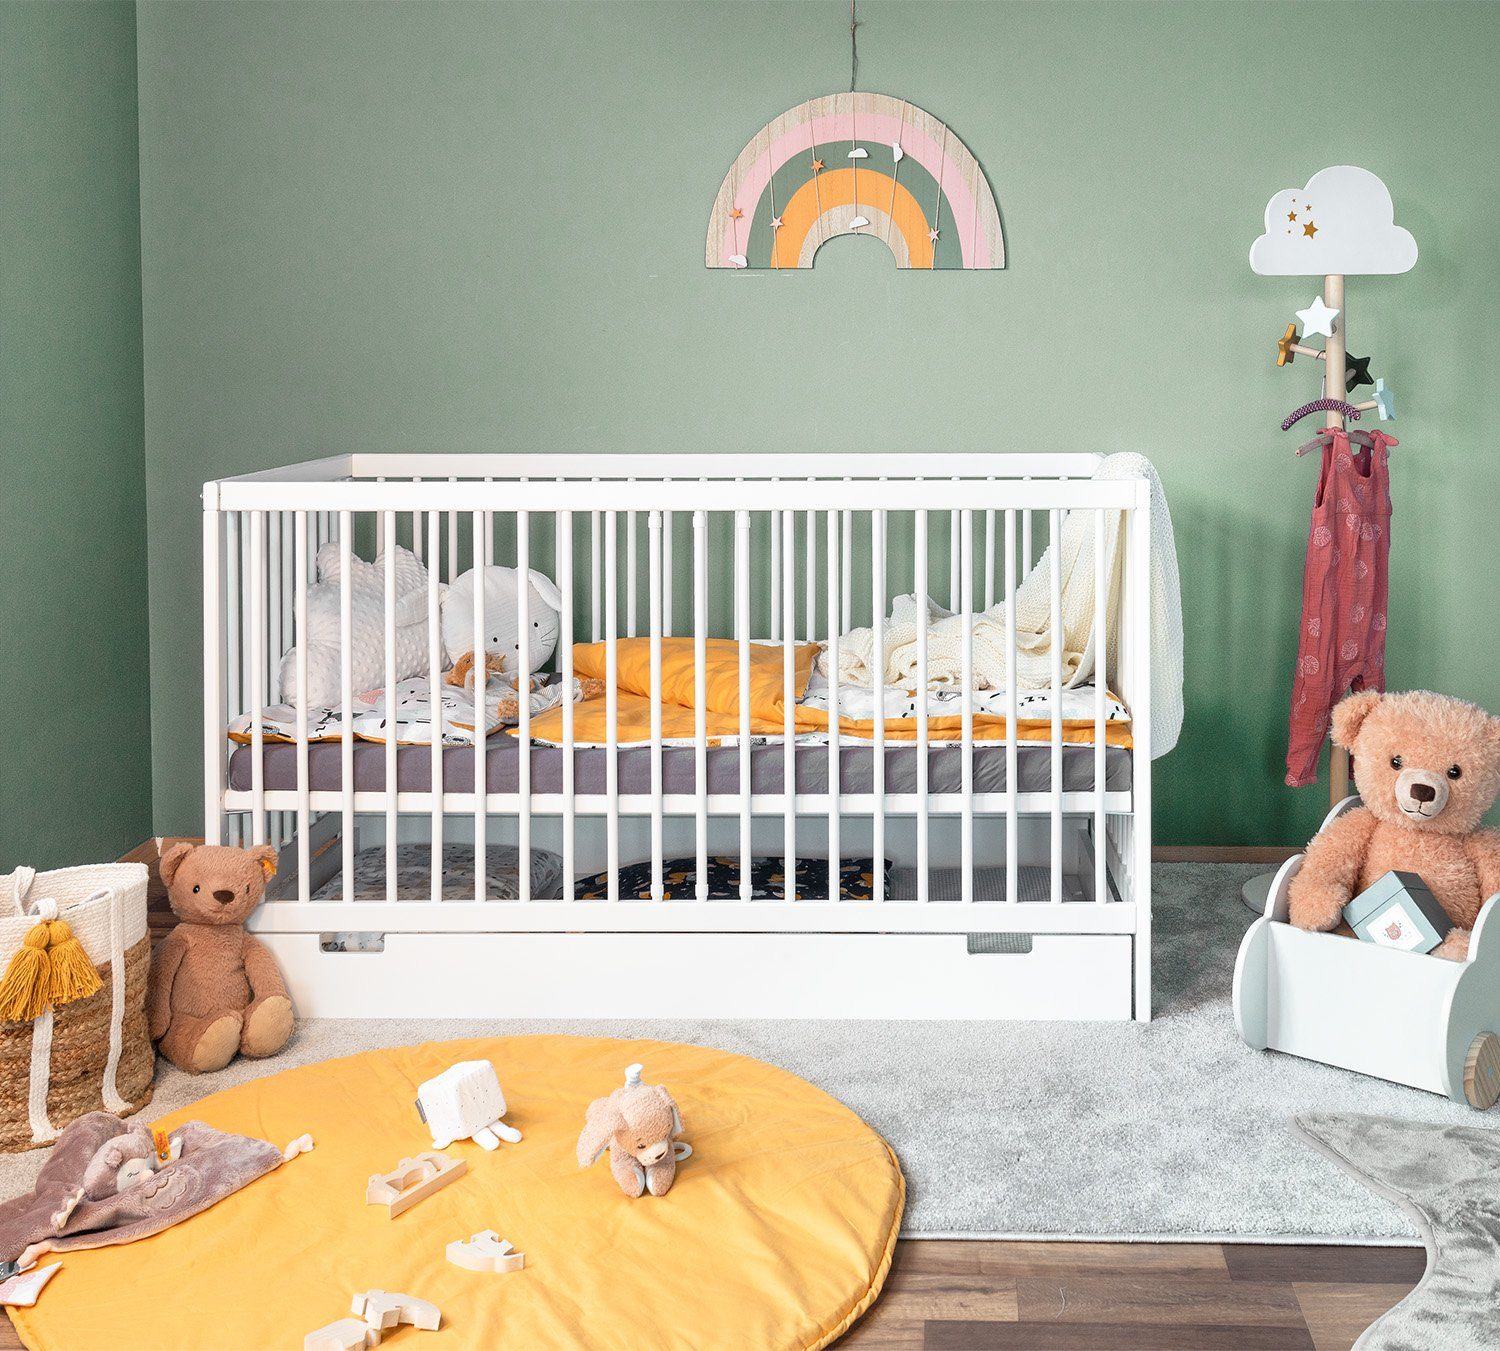 Gitterbett Babybett 120 x 60 cm Komplett Kinderbett GRAVUR-KRONE 5 Farben Massiv 